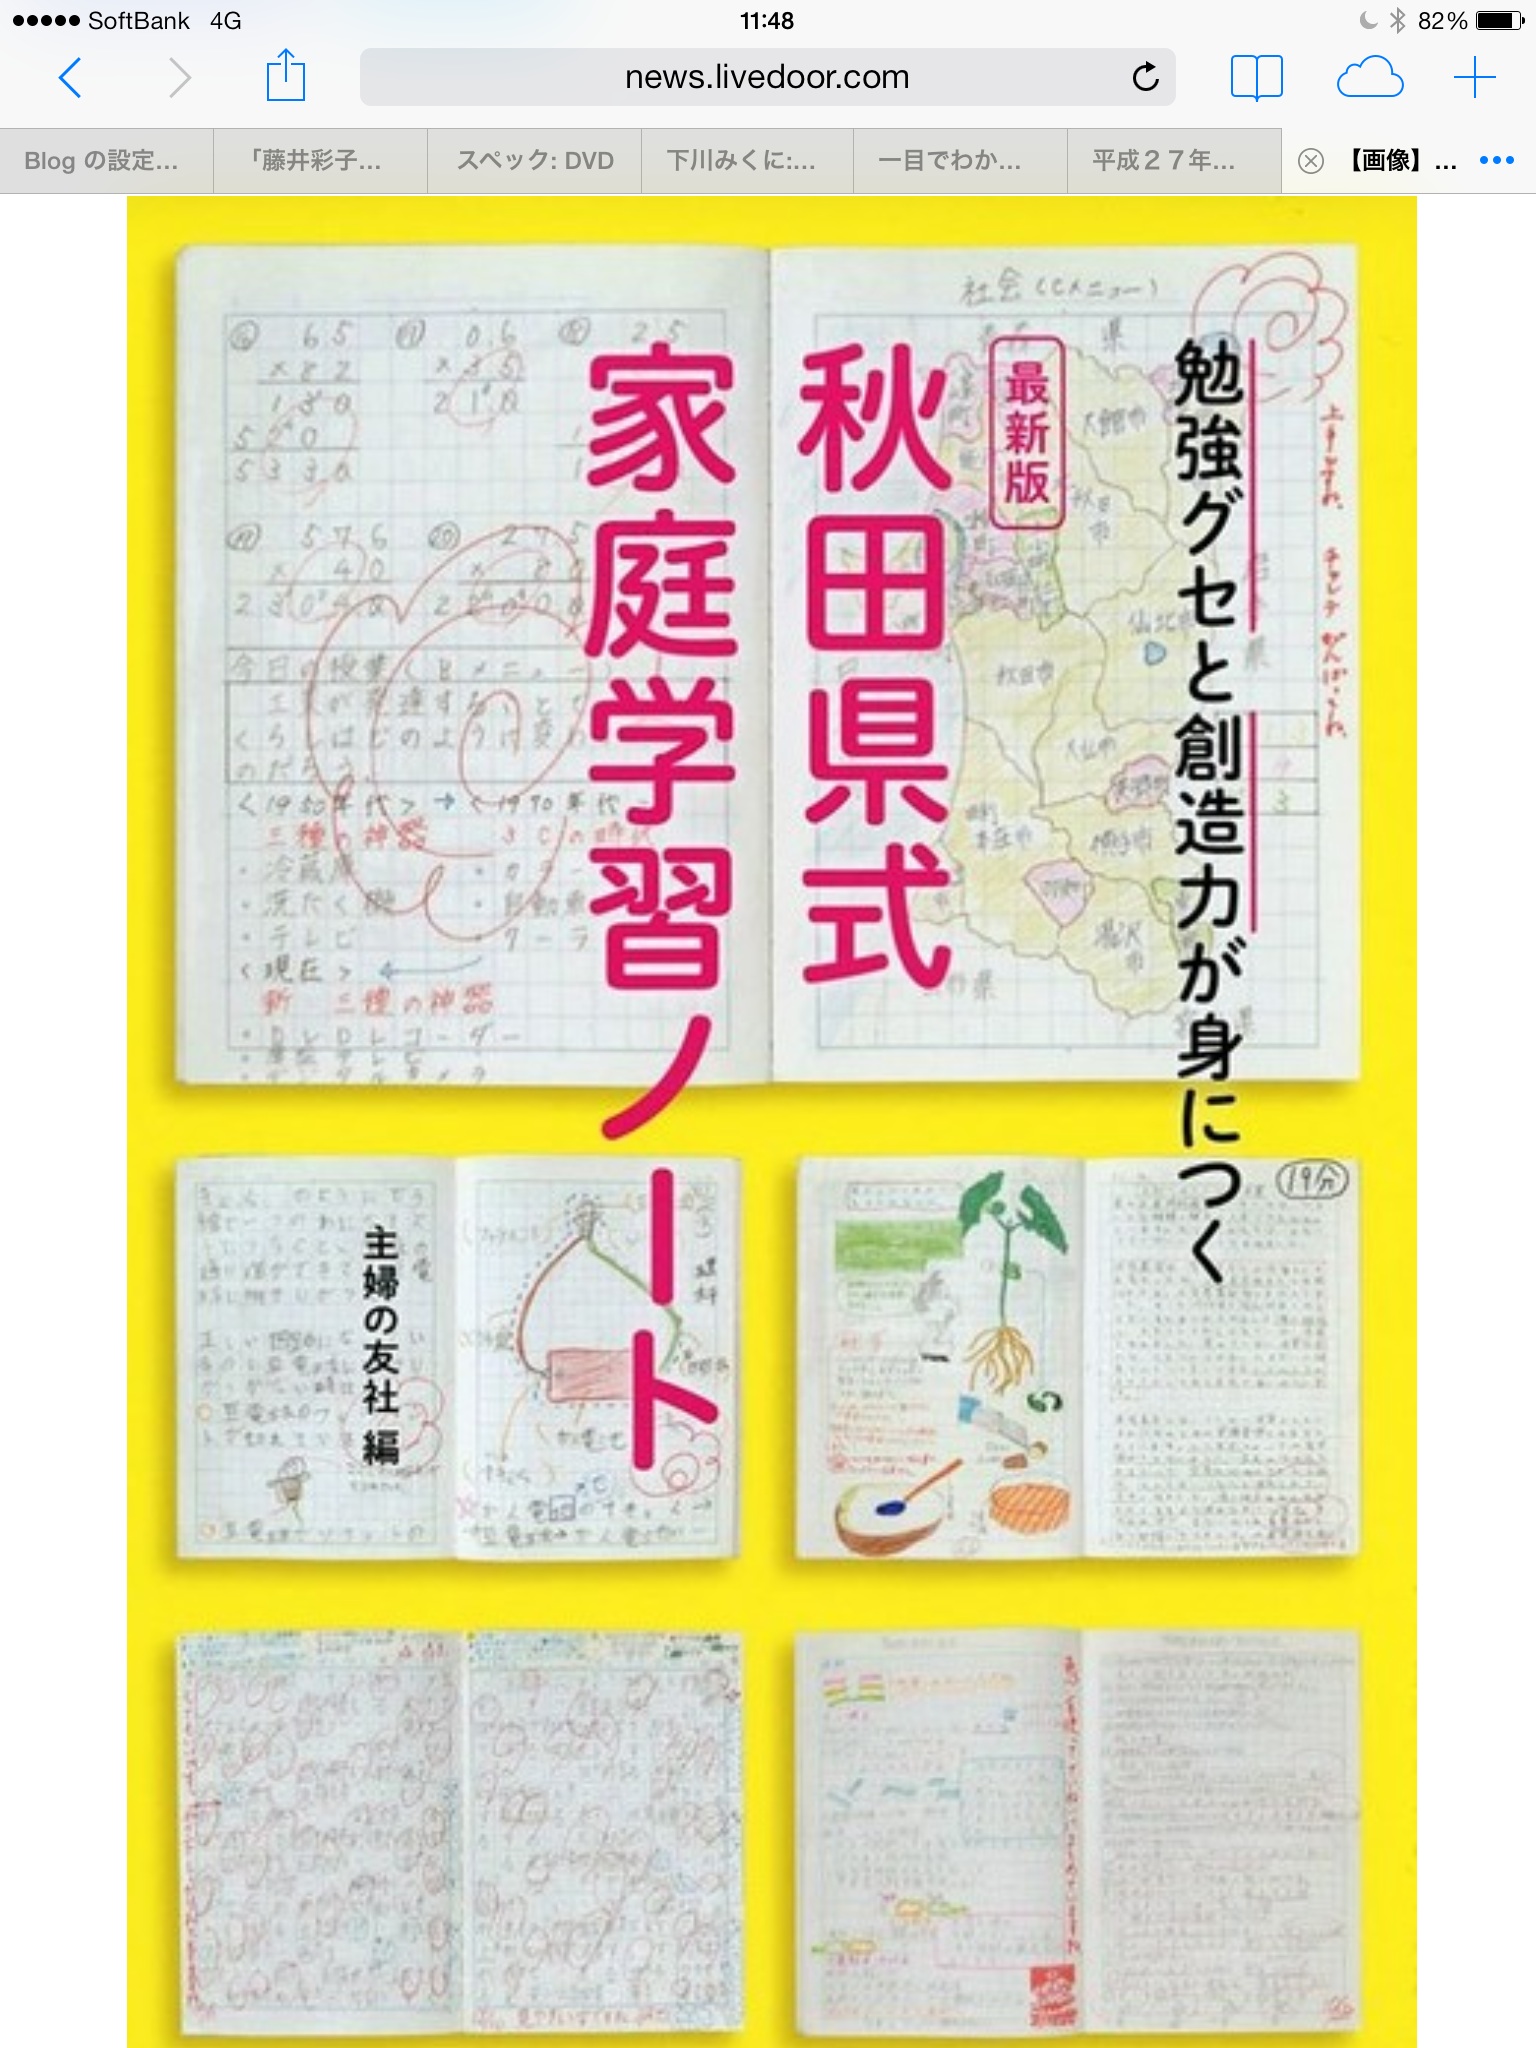 夏休みのおすすめの本、「秋田県式 家庭学習ノート」で勉強しよう❗️